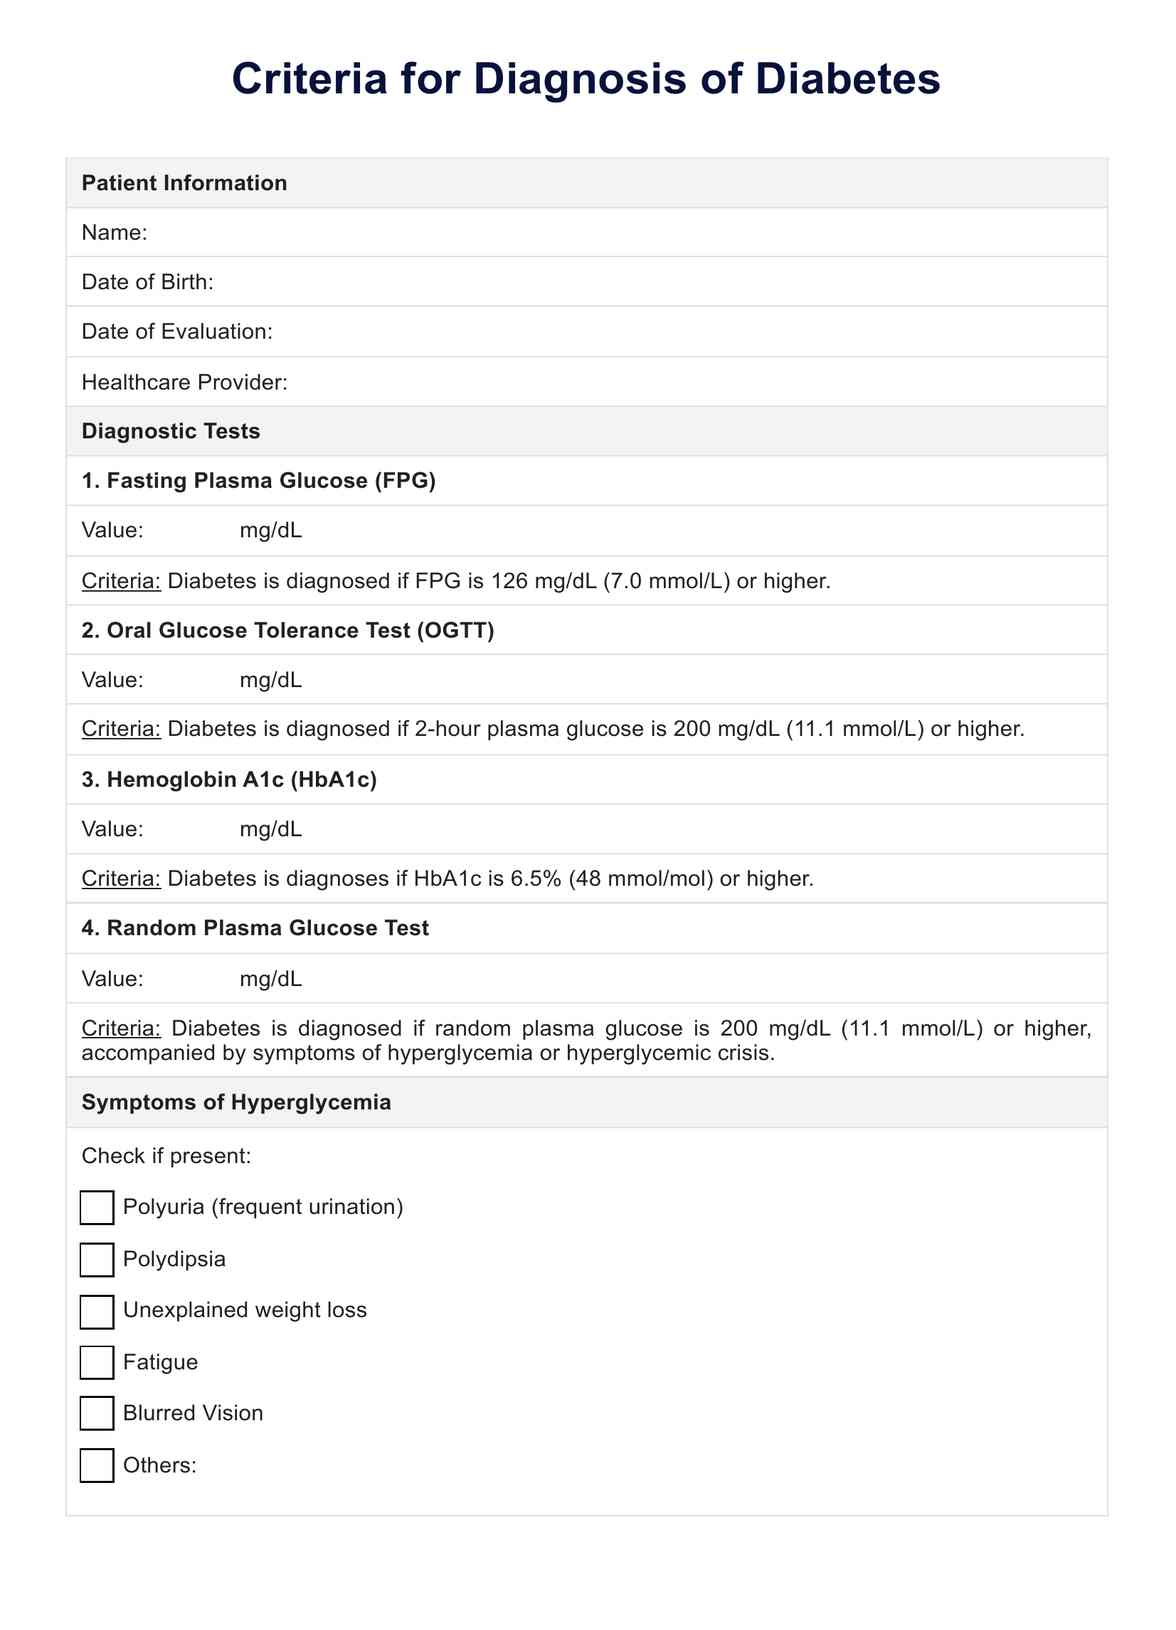 Criteria for Diagnosis of Diabetes PDF Example